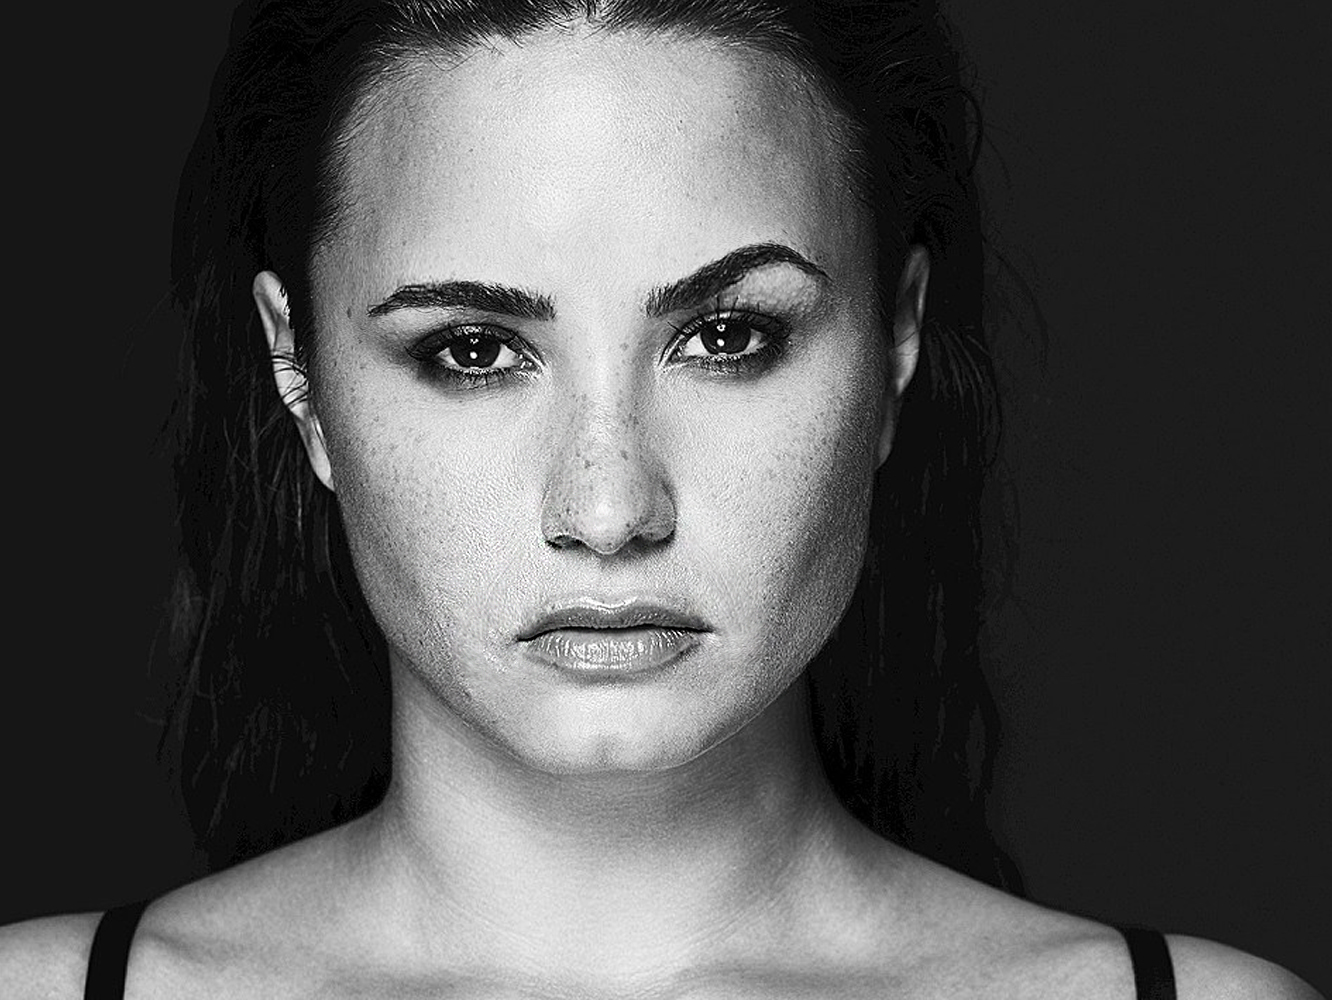 Las caras de oler caca de Demi Lovato en sus meet & greets han terminado cabreando a los fans